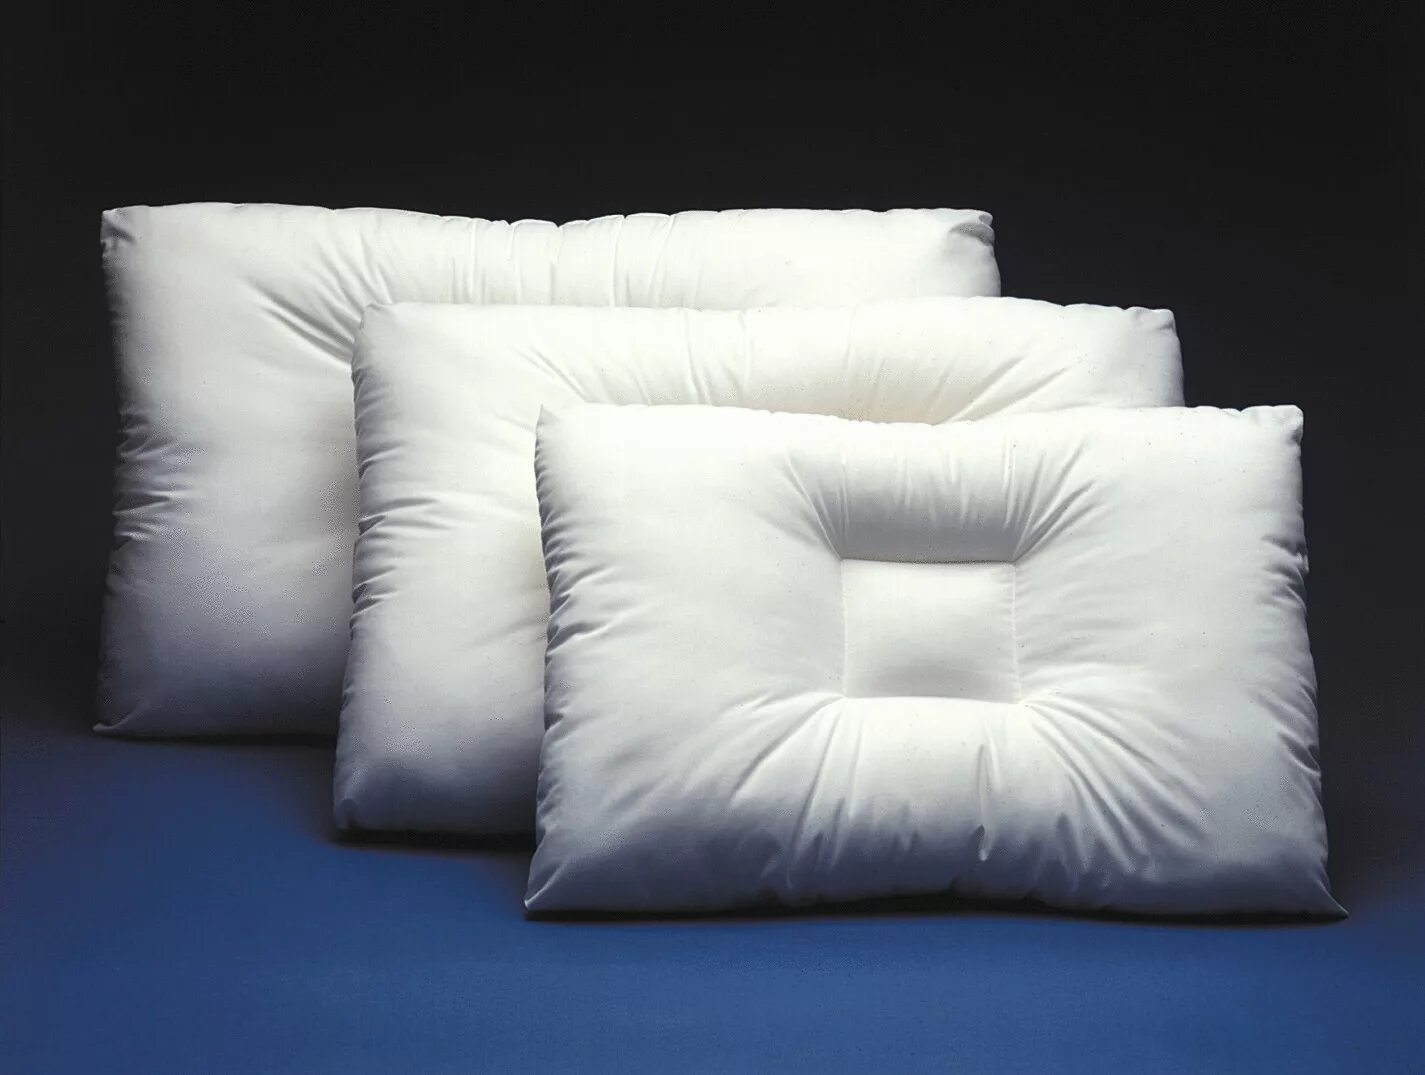 Купить подушку в хабаровске. Подушка. Мебельные подушки. Подушка для дивана. Дизайнерские подушки.